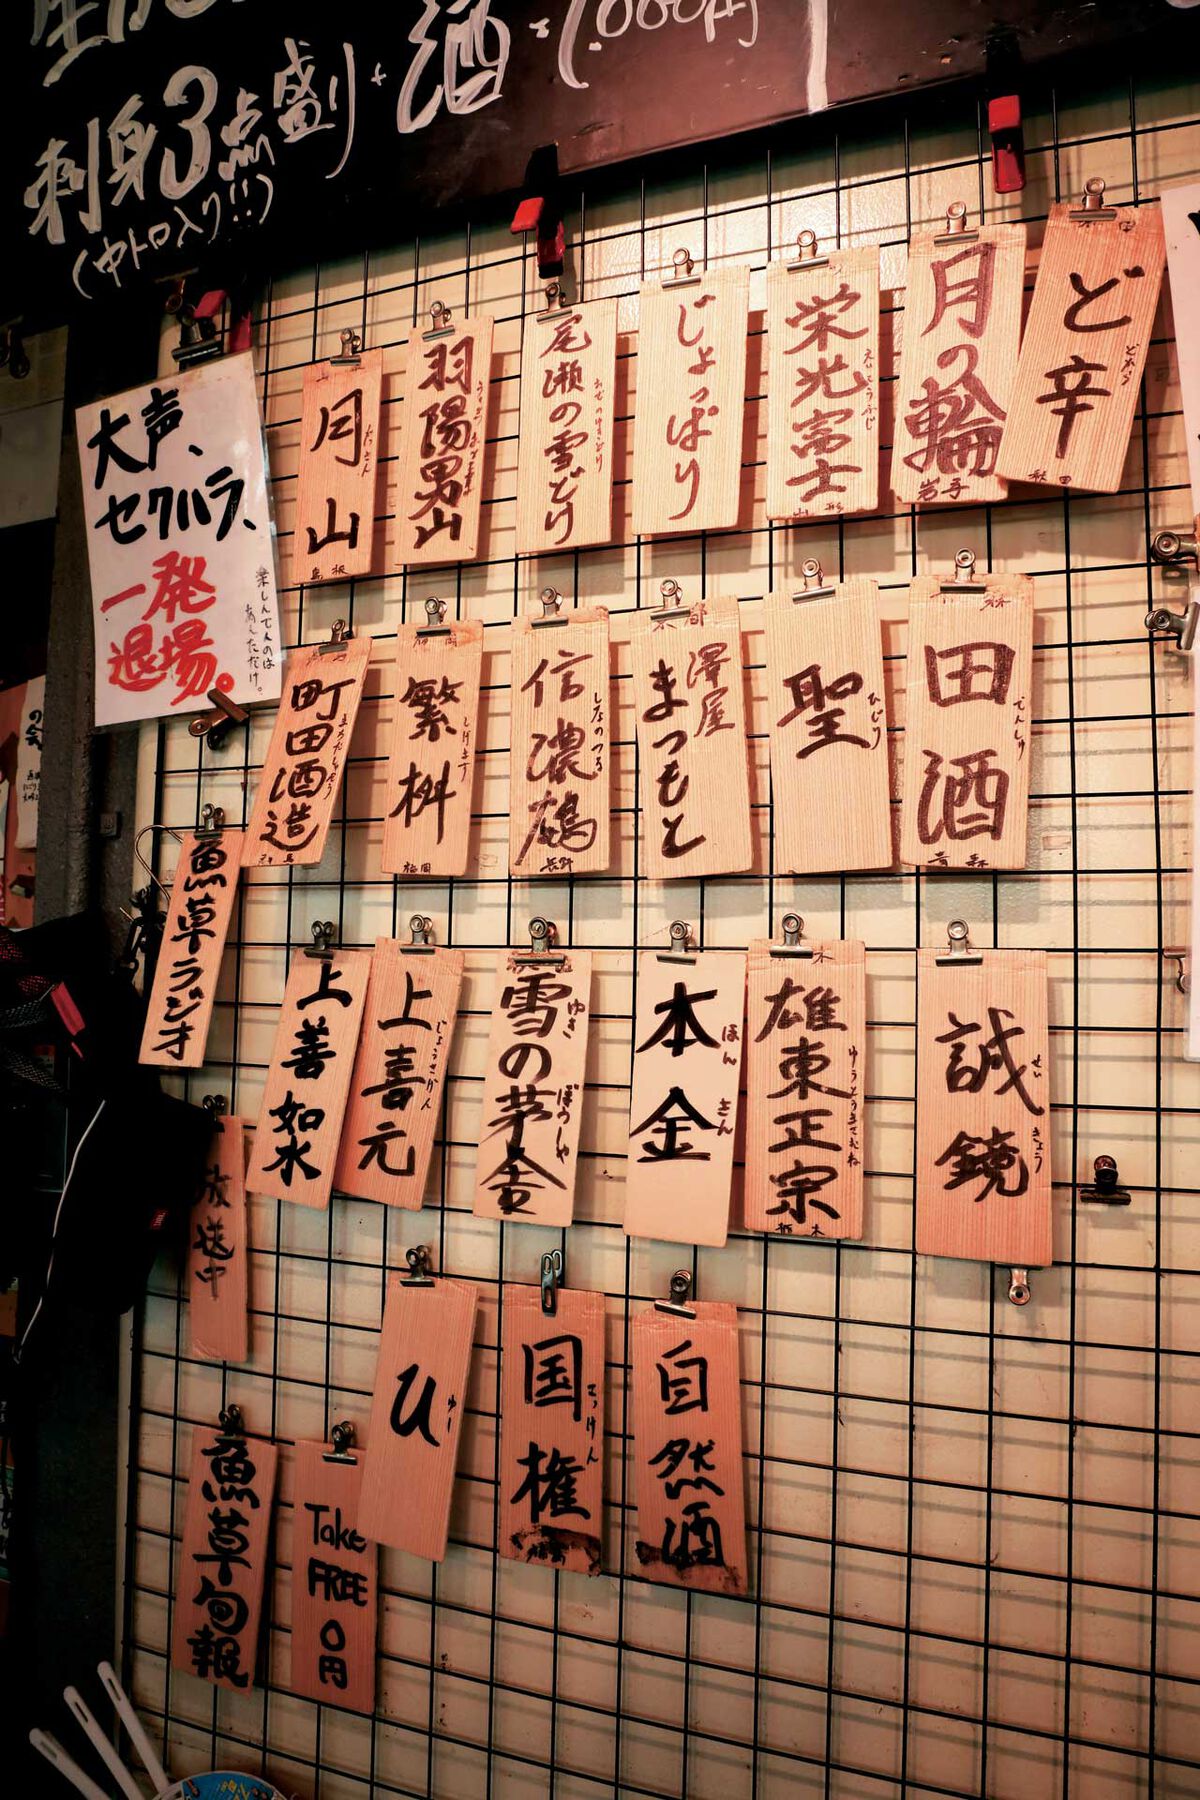 アメ横で 海のレバー を銘酒と共に味わう 魚草 東京 上野にある昼呑みの名店 男の隠れ家デジタル